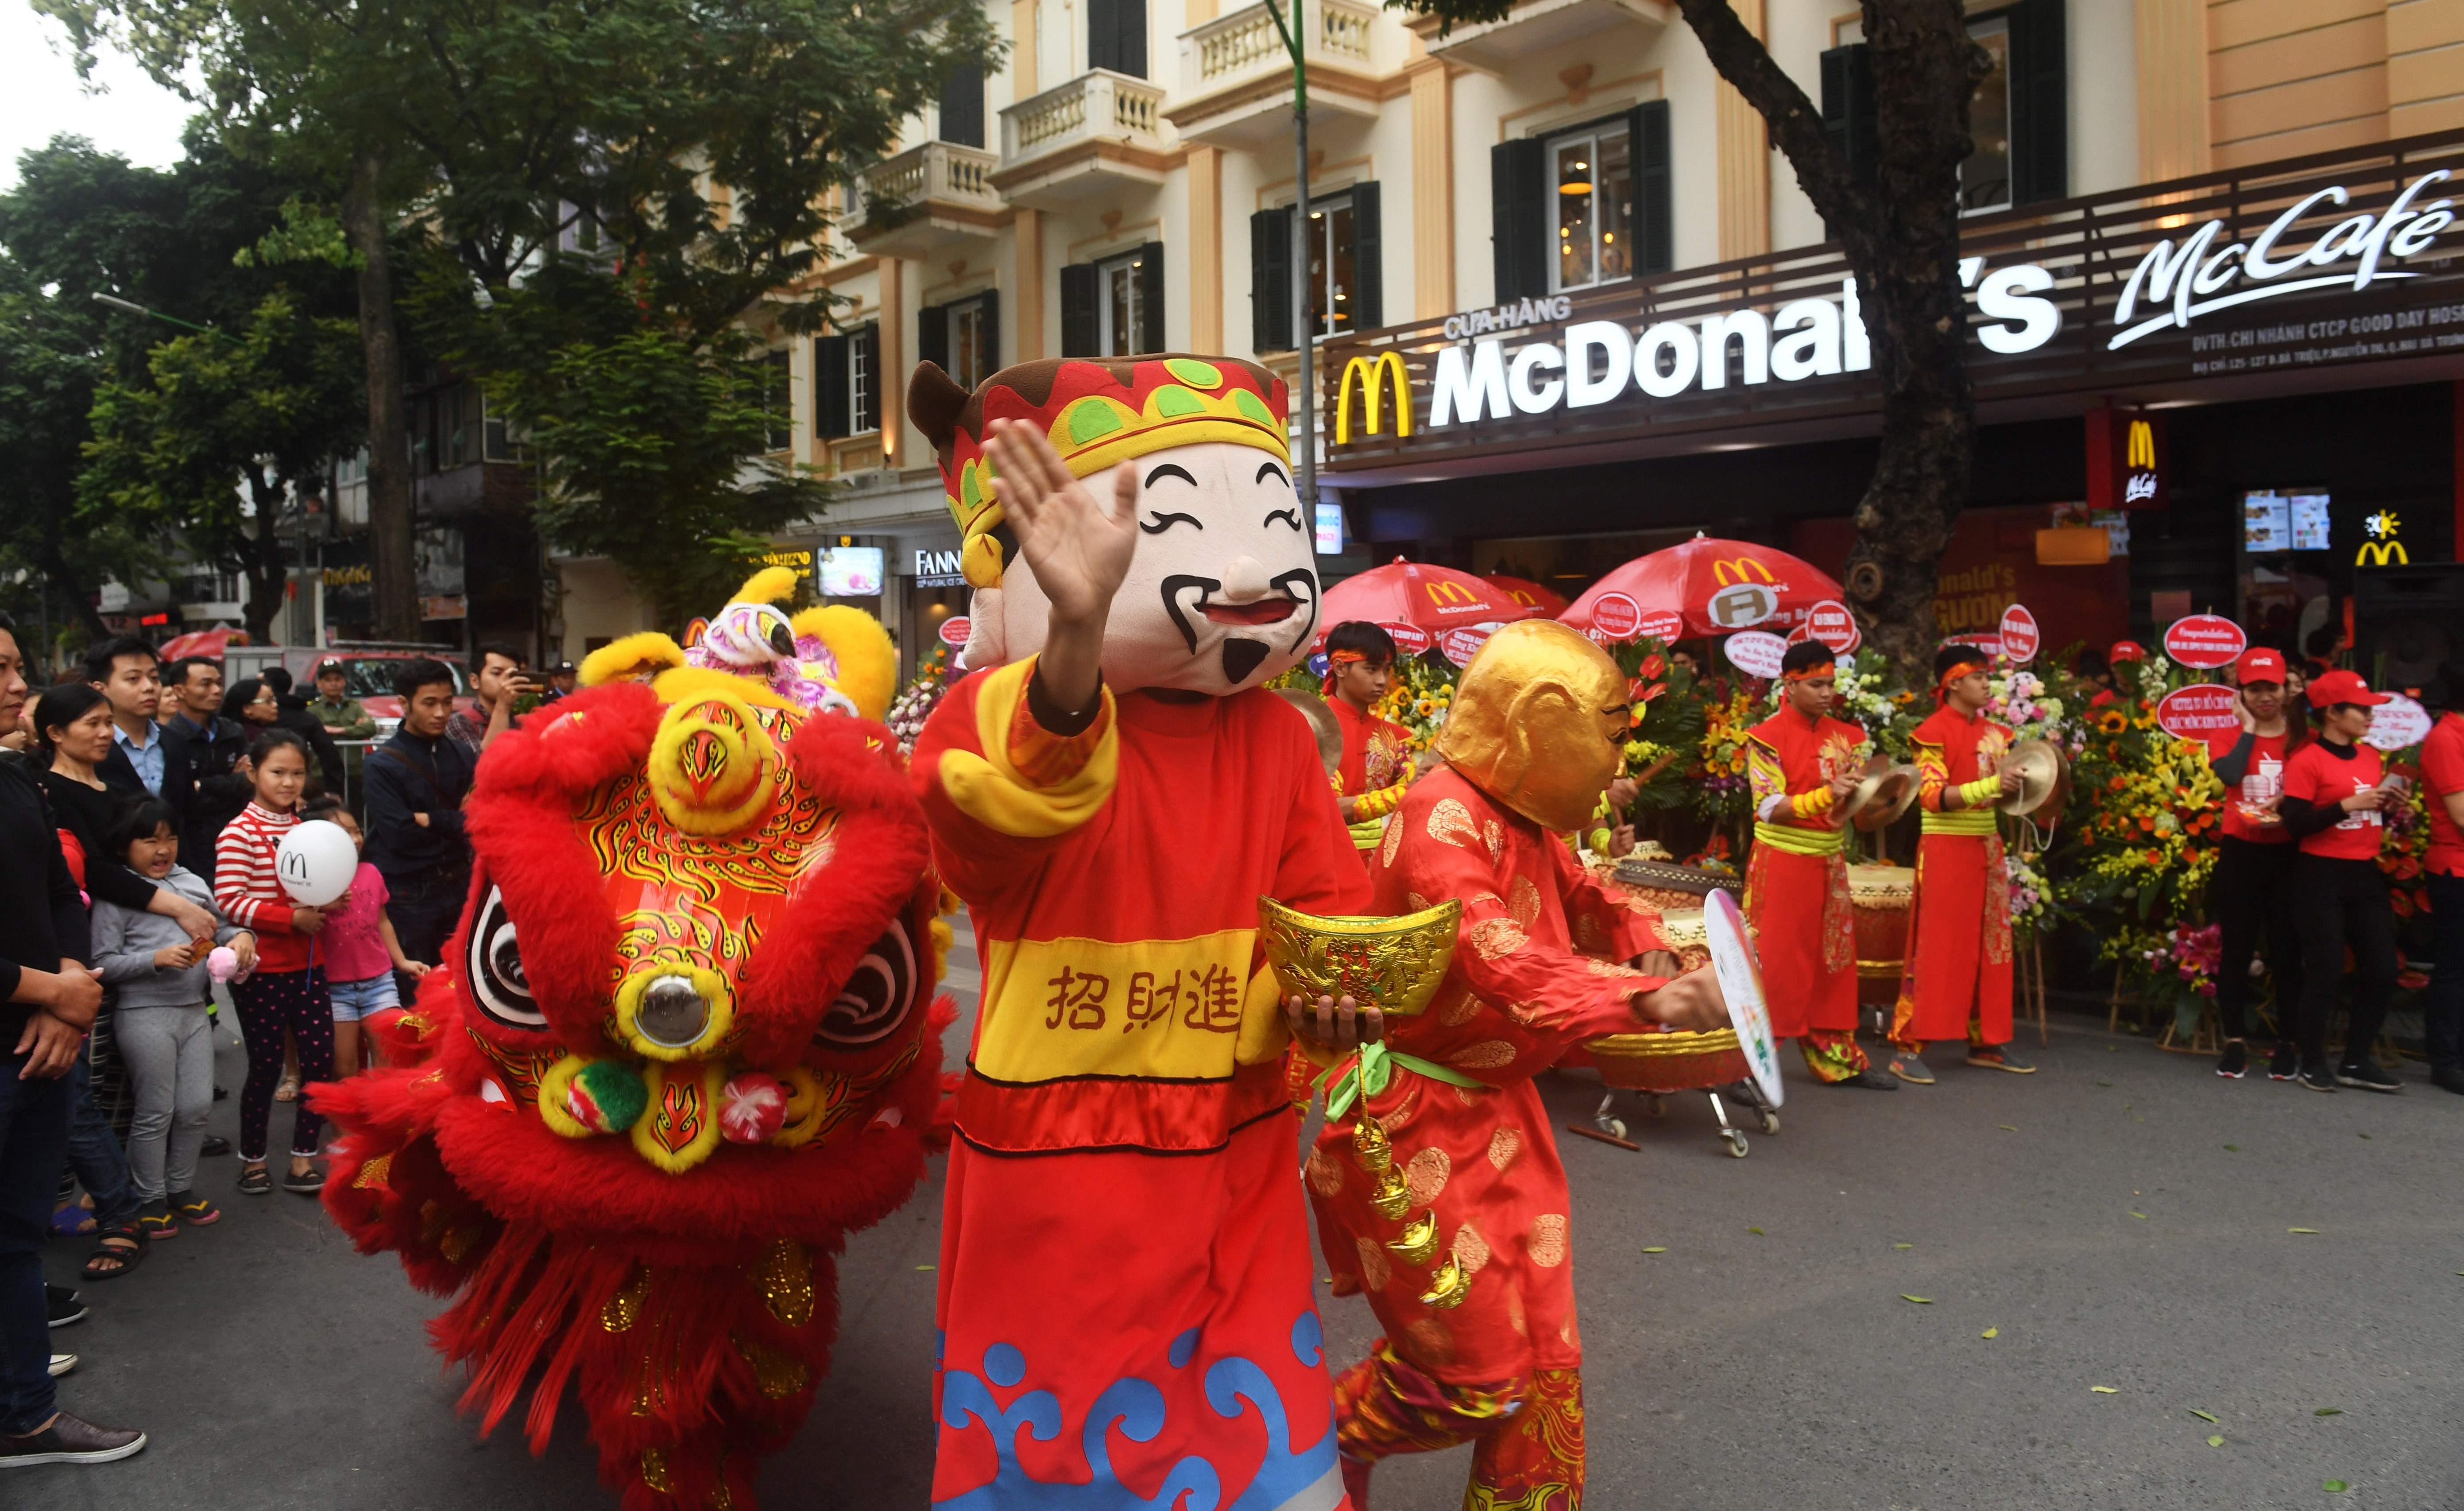 صور افتتاح اول مطعم لماكدوناز فى فيتنام (3)